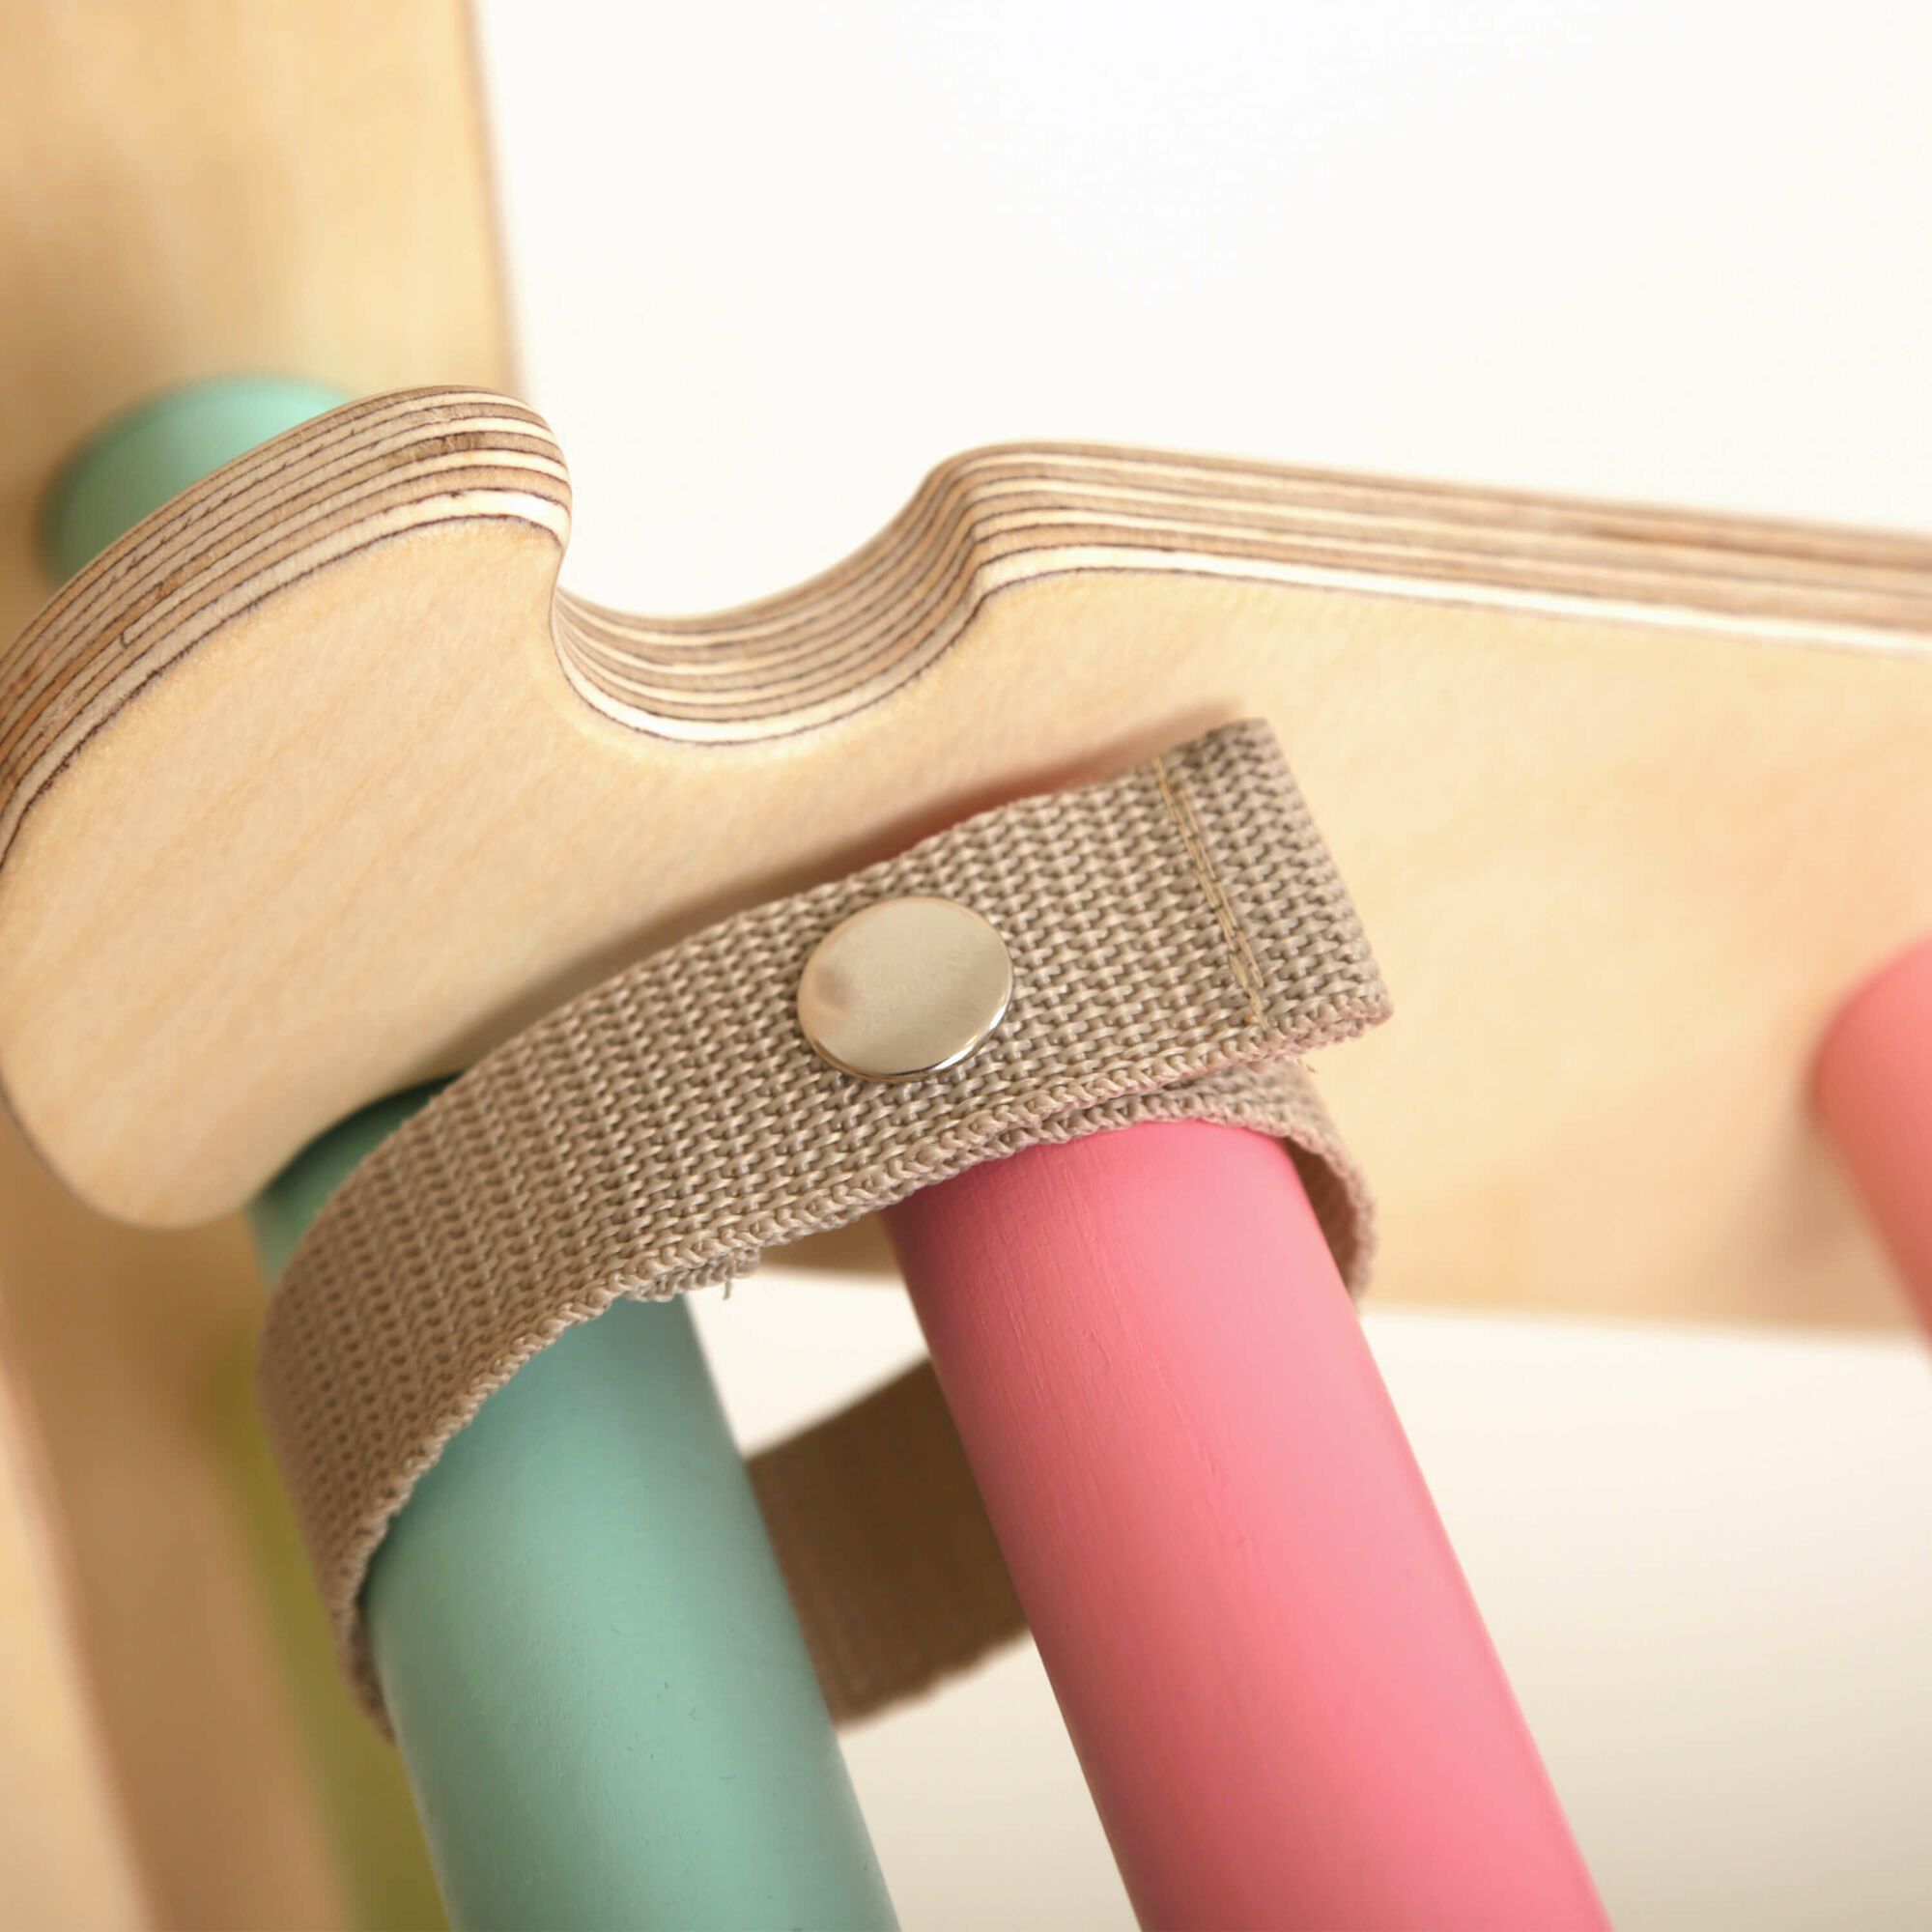 KateHaa Kletterwürfel / Holzwürfel mit Leiter Pastellfarben